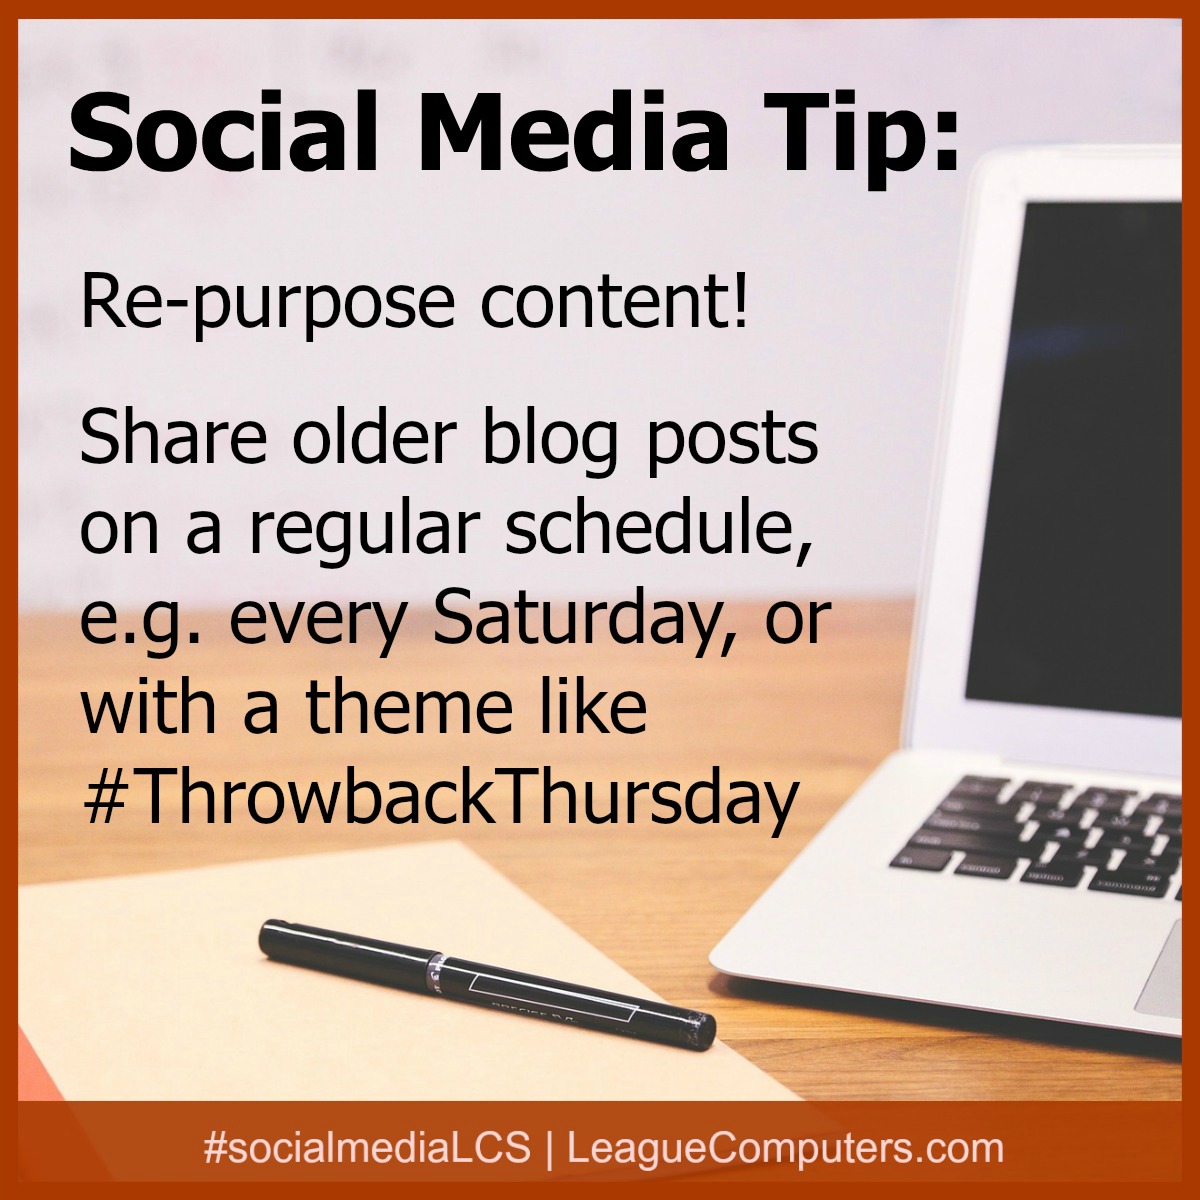 Share older blog posts on a regular schedule